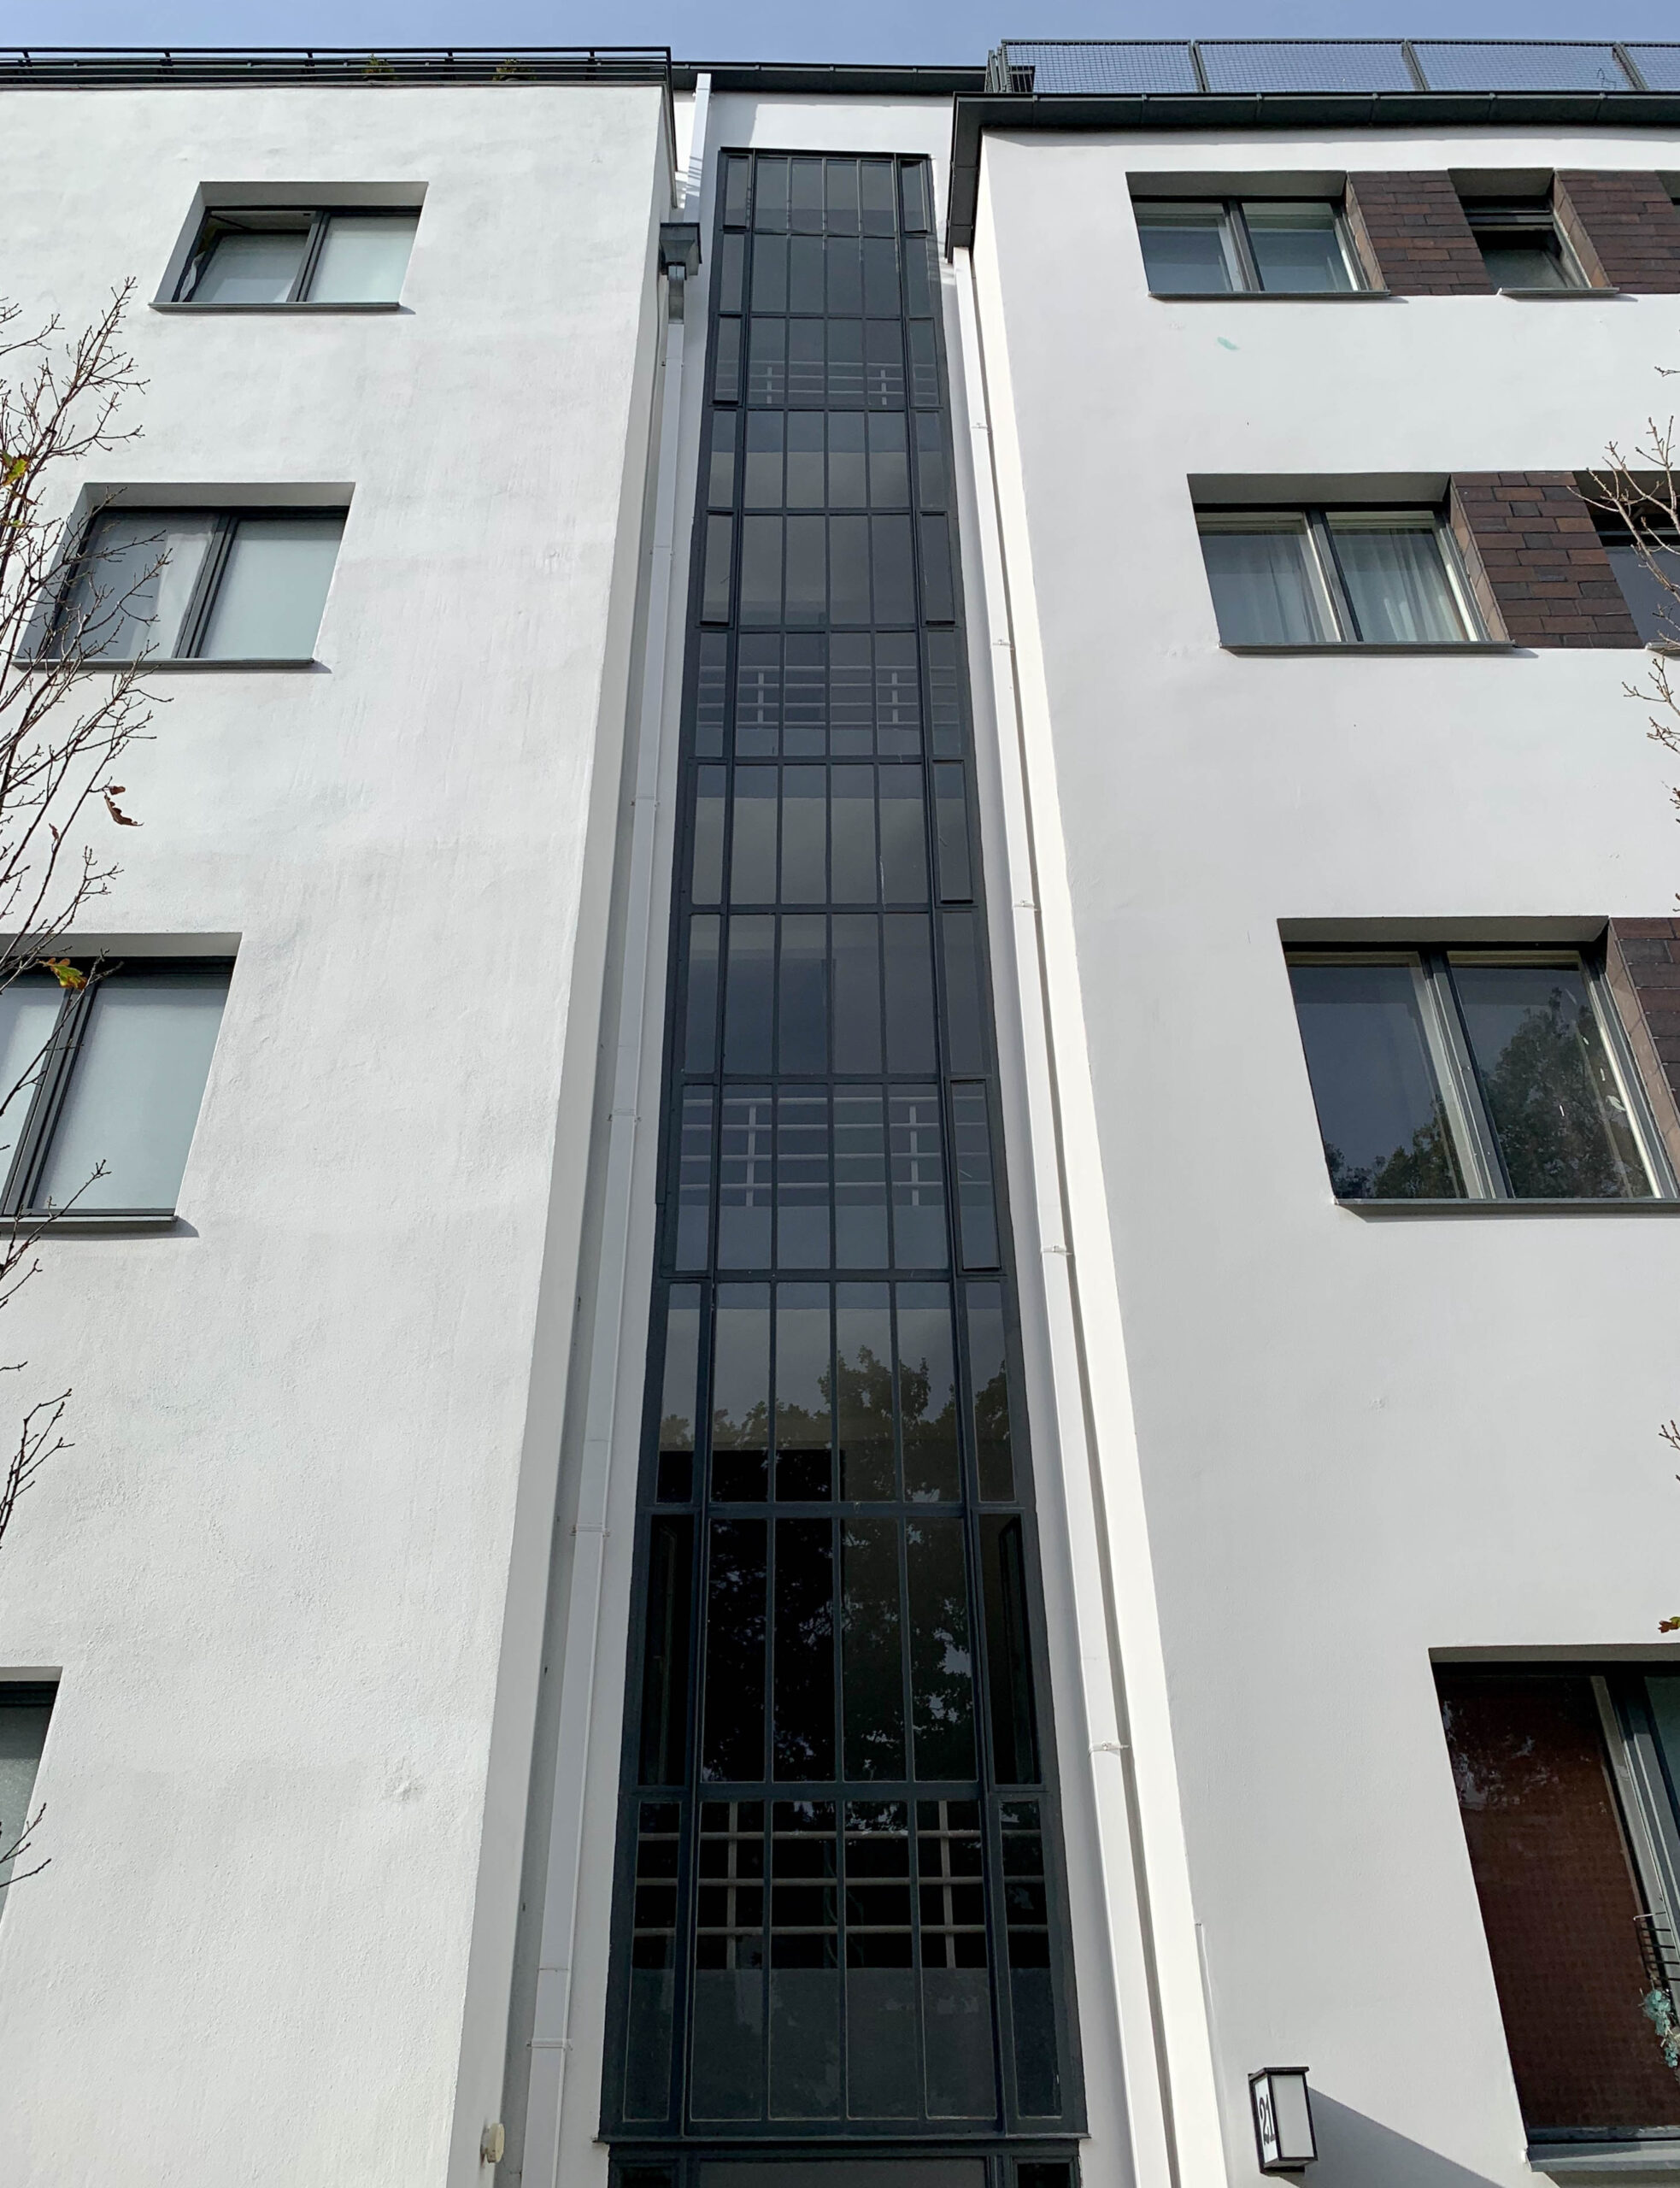 Wohnanlage, Siemensstadt, 1929-1931. Architekt: Walter Gropius